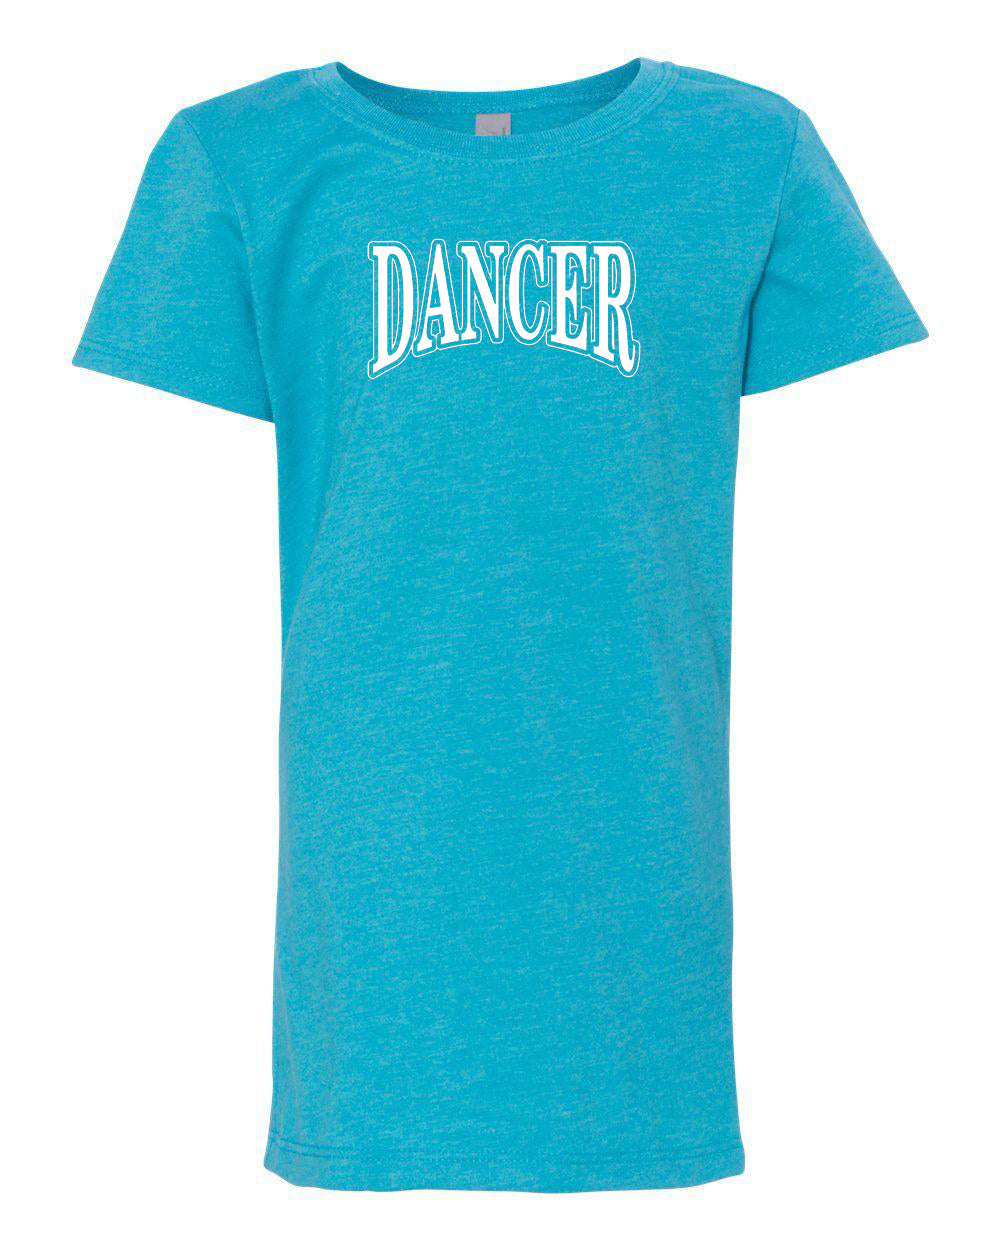 Dancer Girls T-Shirt